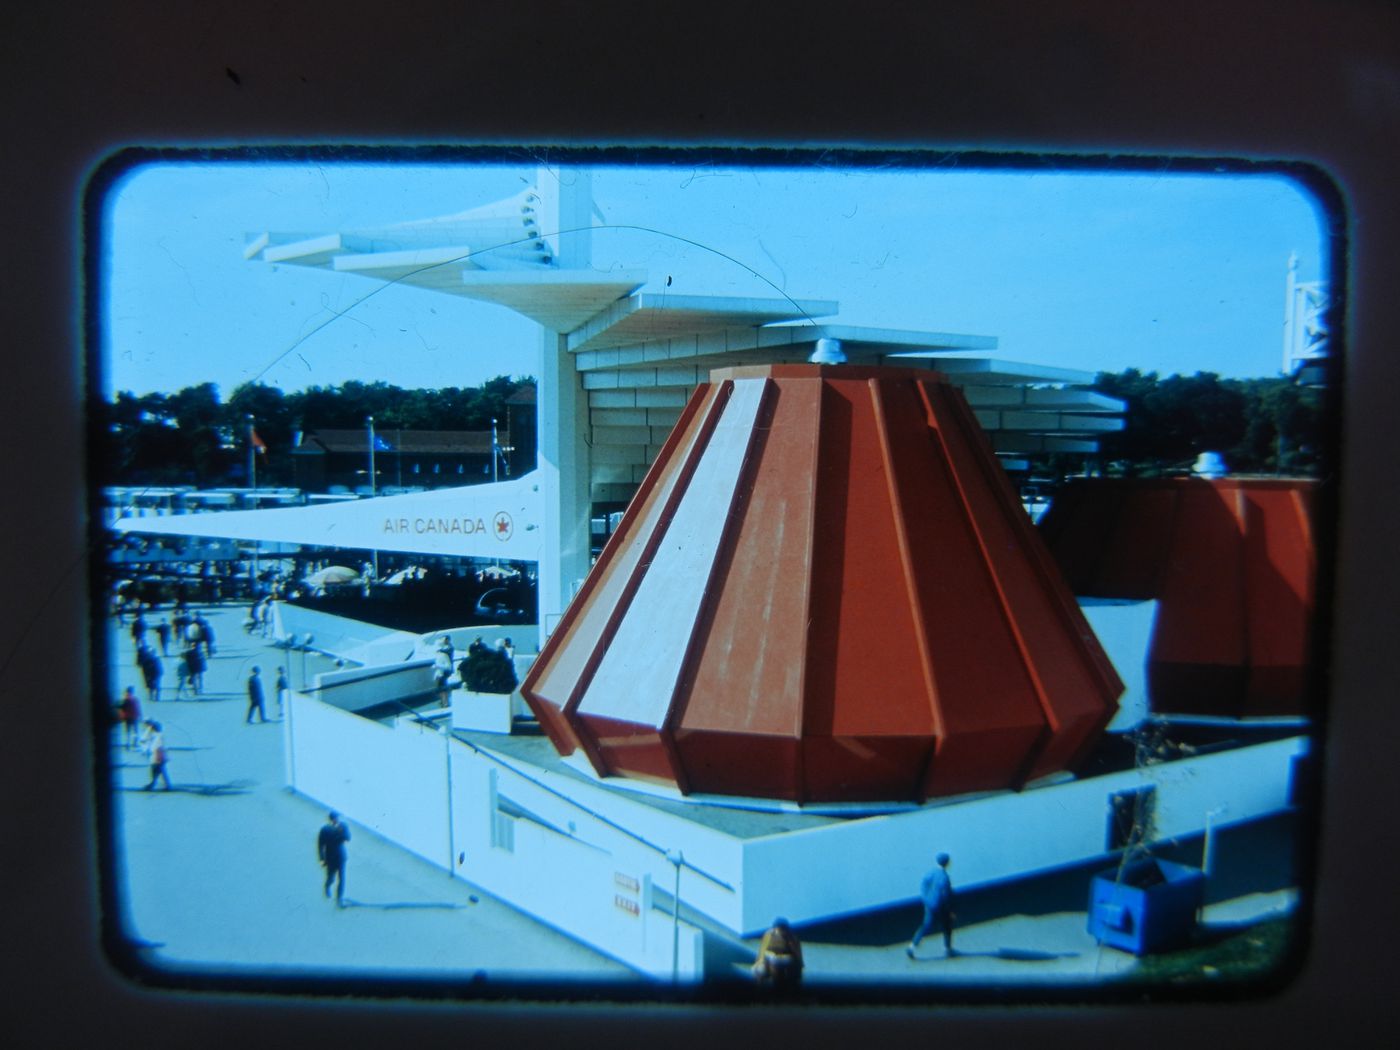 View of the Air Canada's Pavilion, Expo 67, Montréal, Québec